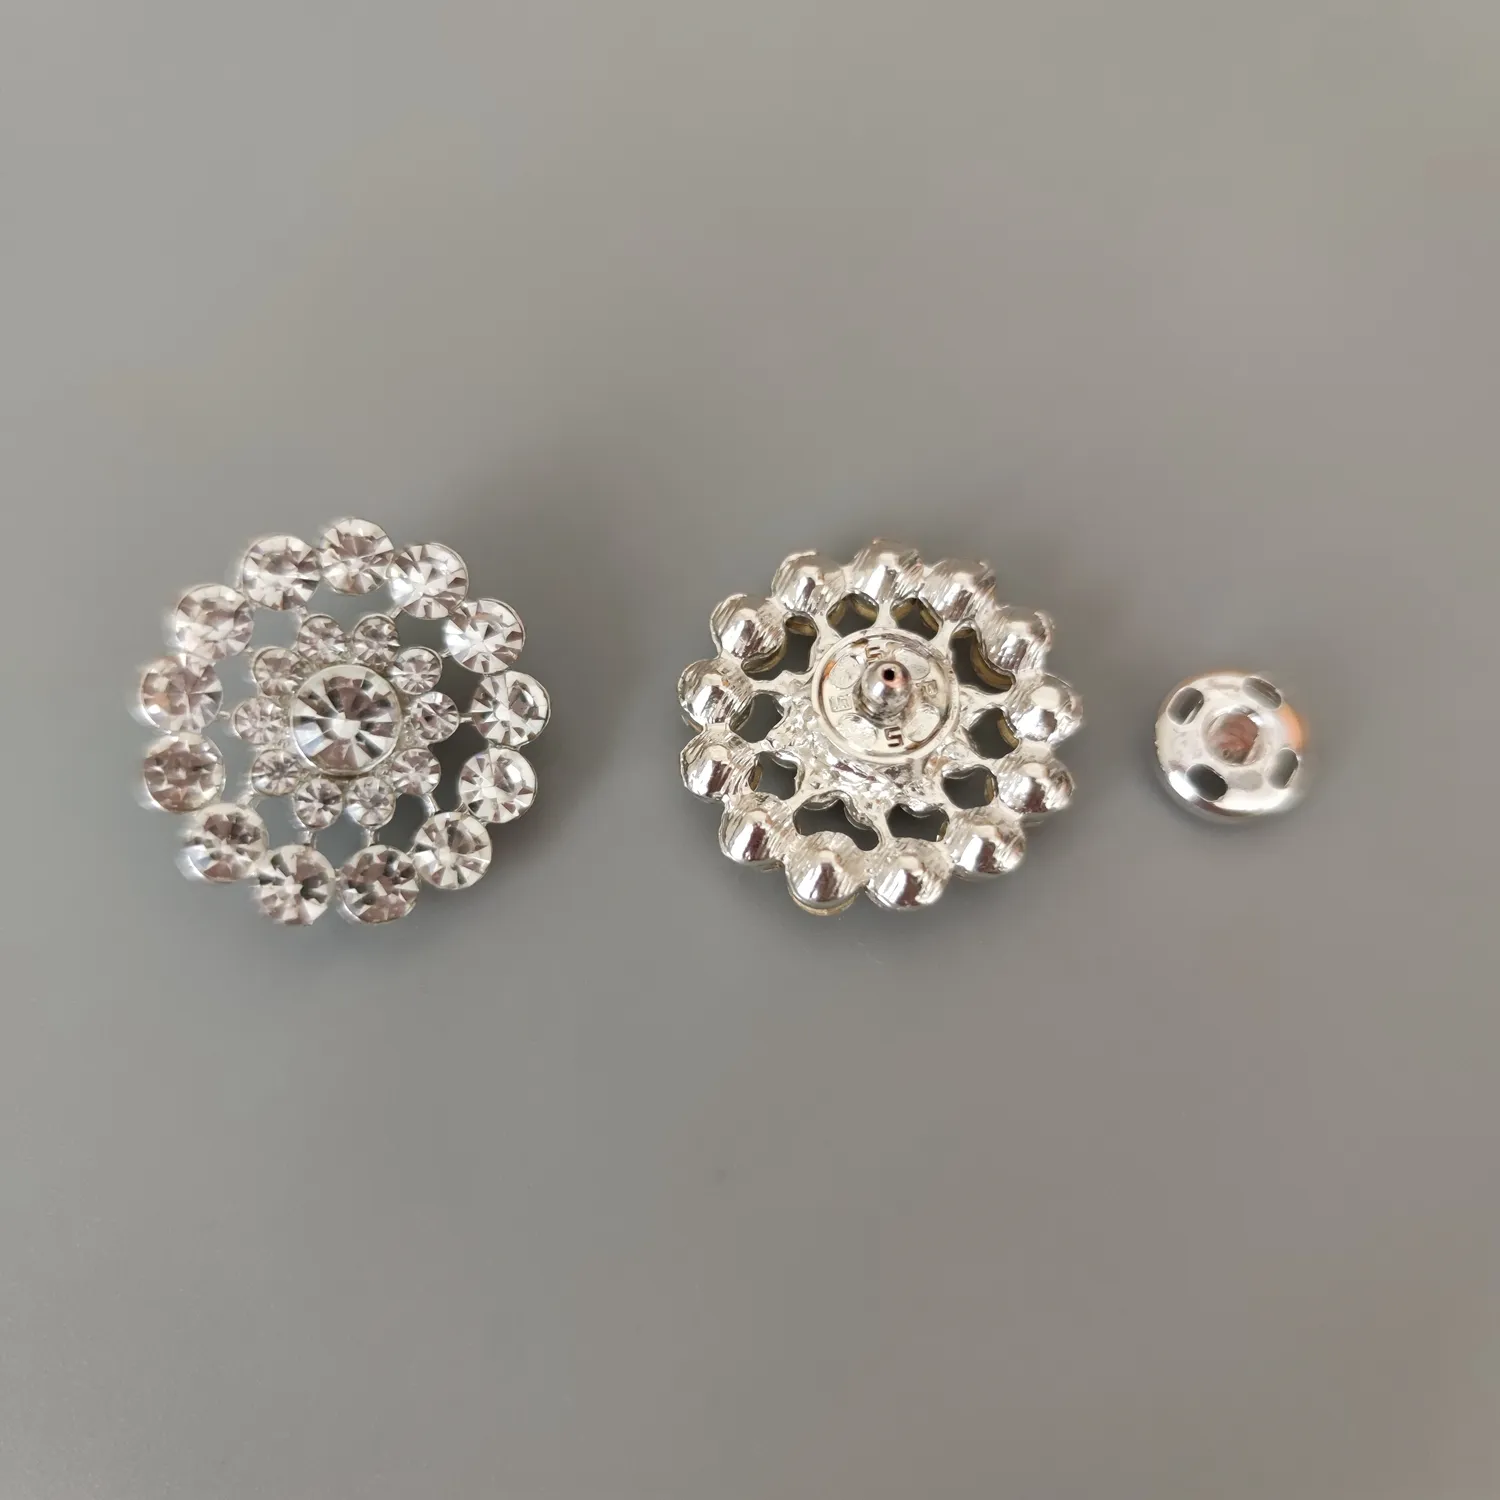 Mode Phantasie Blumen Strass Kristall Metall Druckknopf Knöpfe für Roben Kleidung